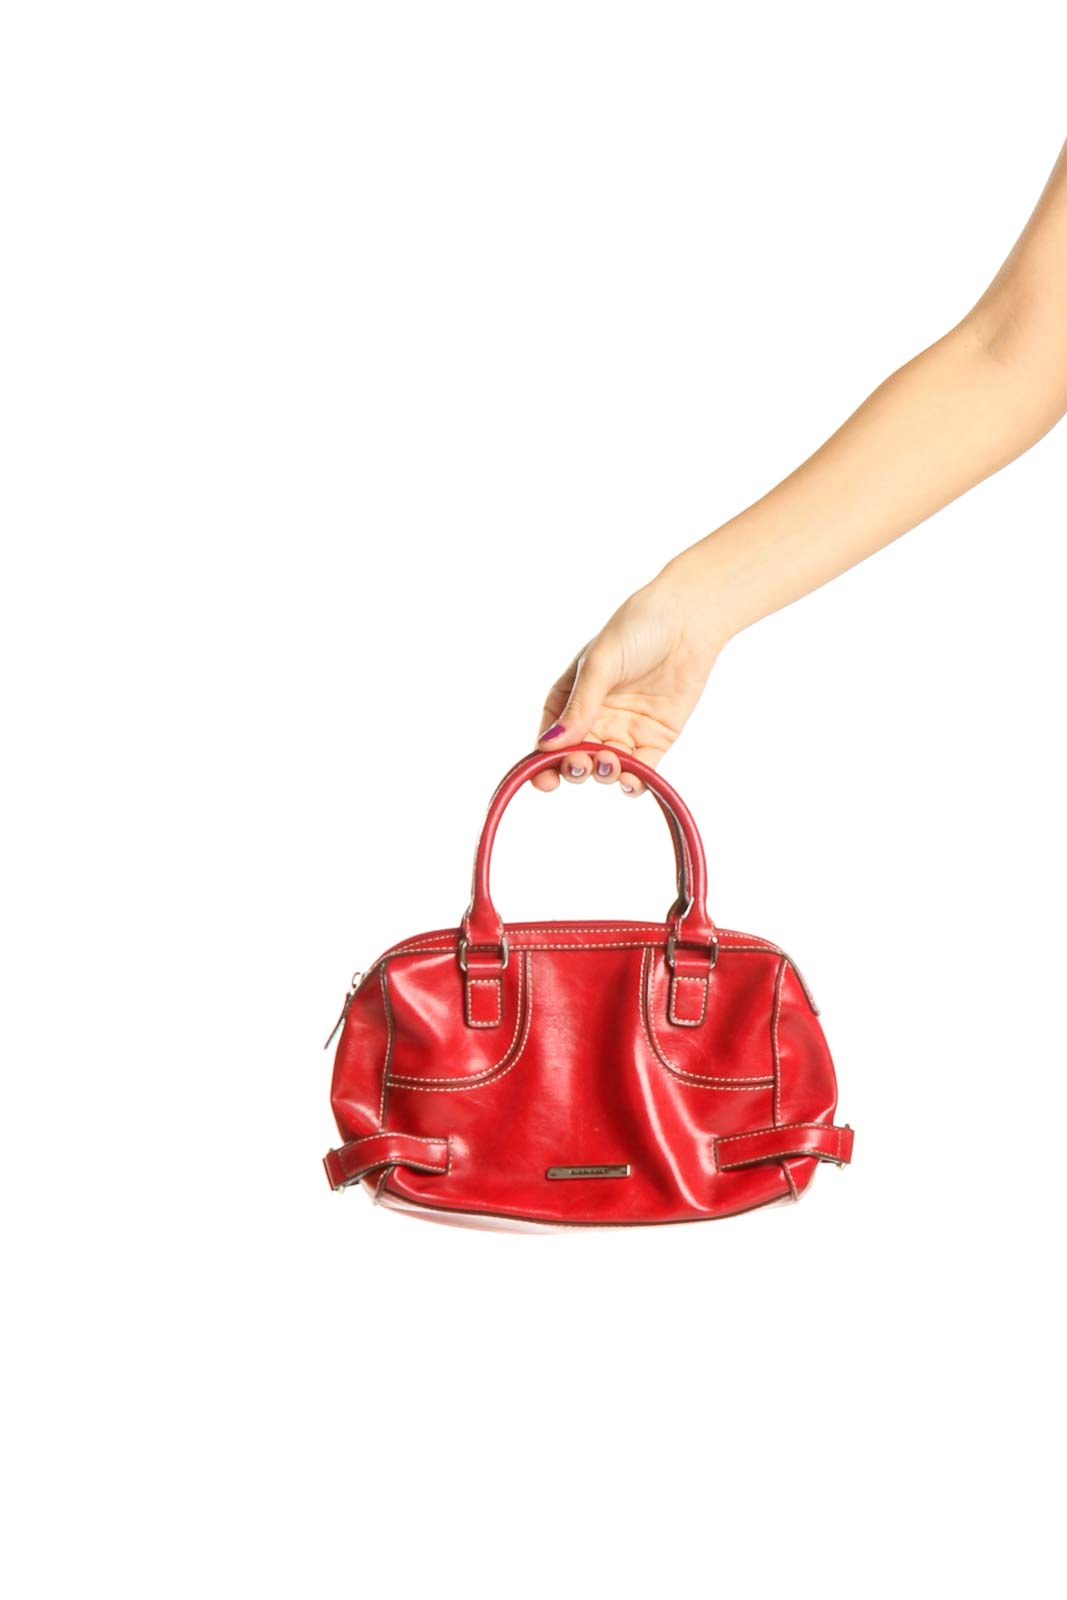 Red Satchel Bag Front